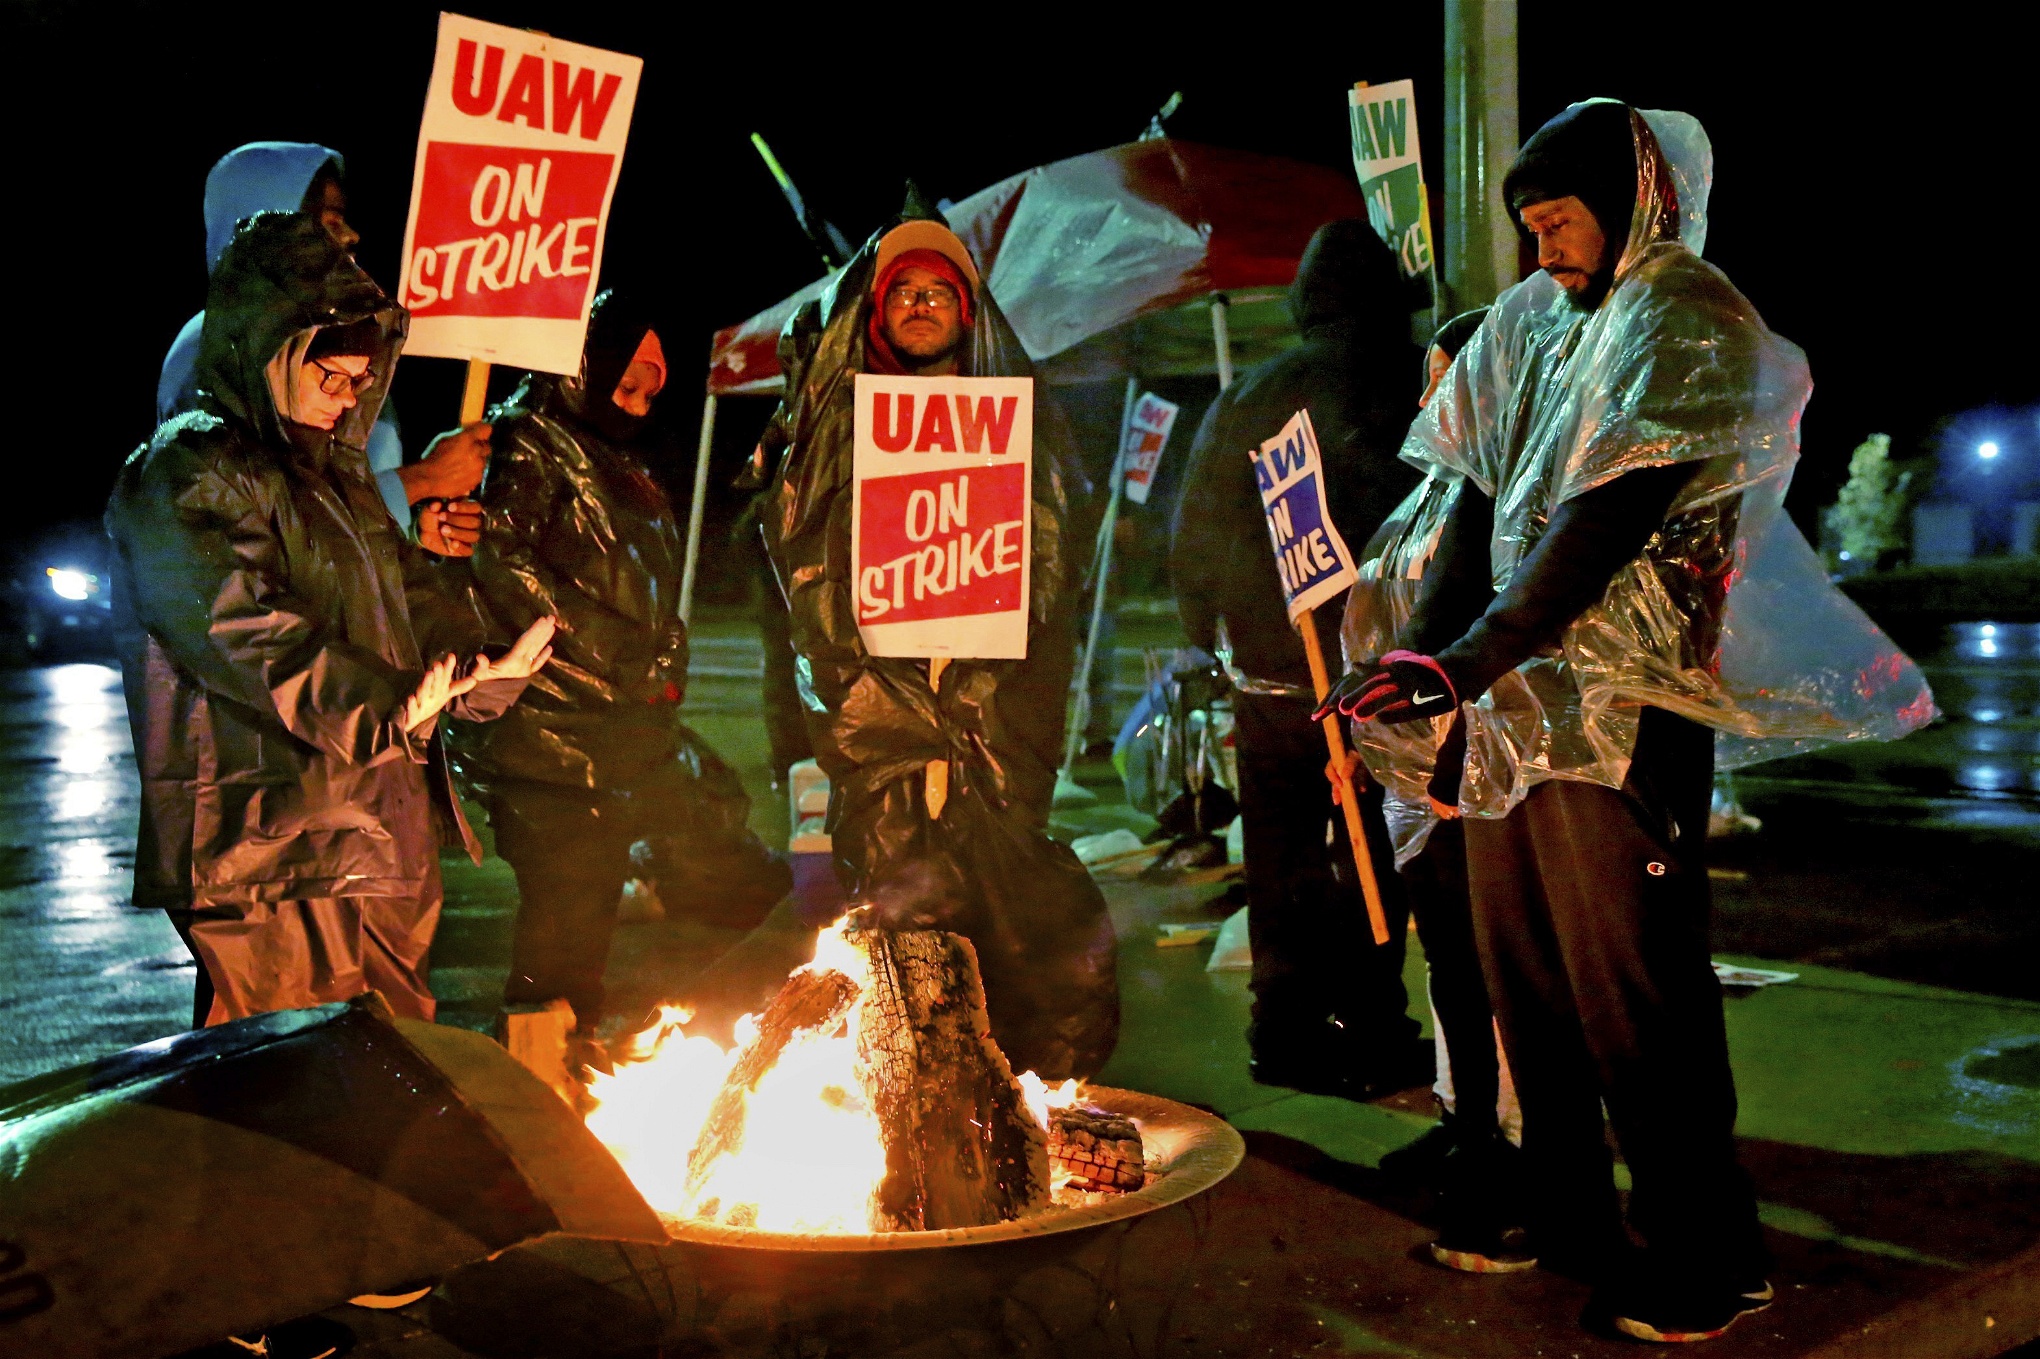 Strejkande bilfabriksarbetare värmer sig runt en brasa. Det är kväll eller natt och de håller skyltar med texten UAW on strike.